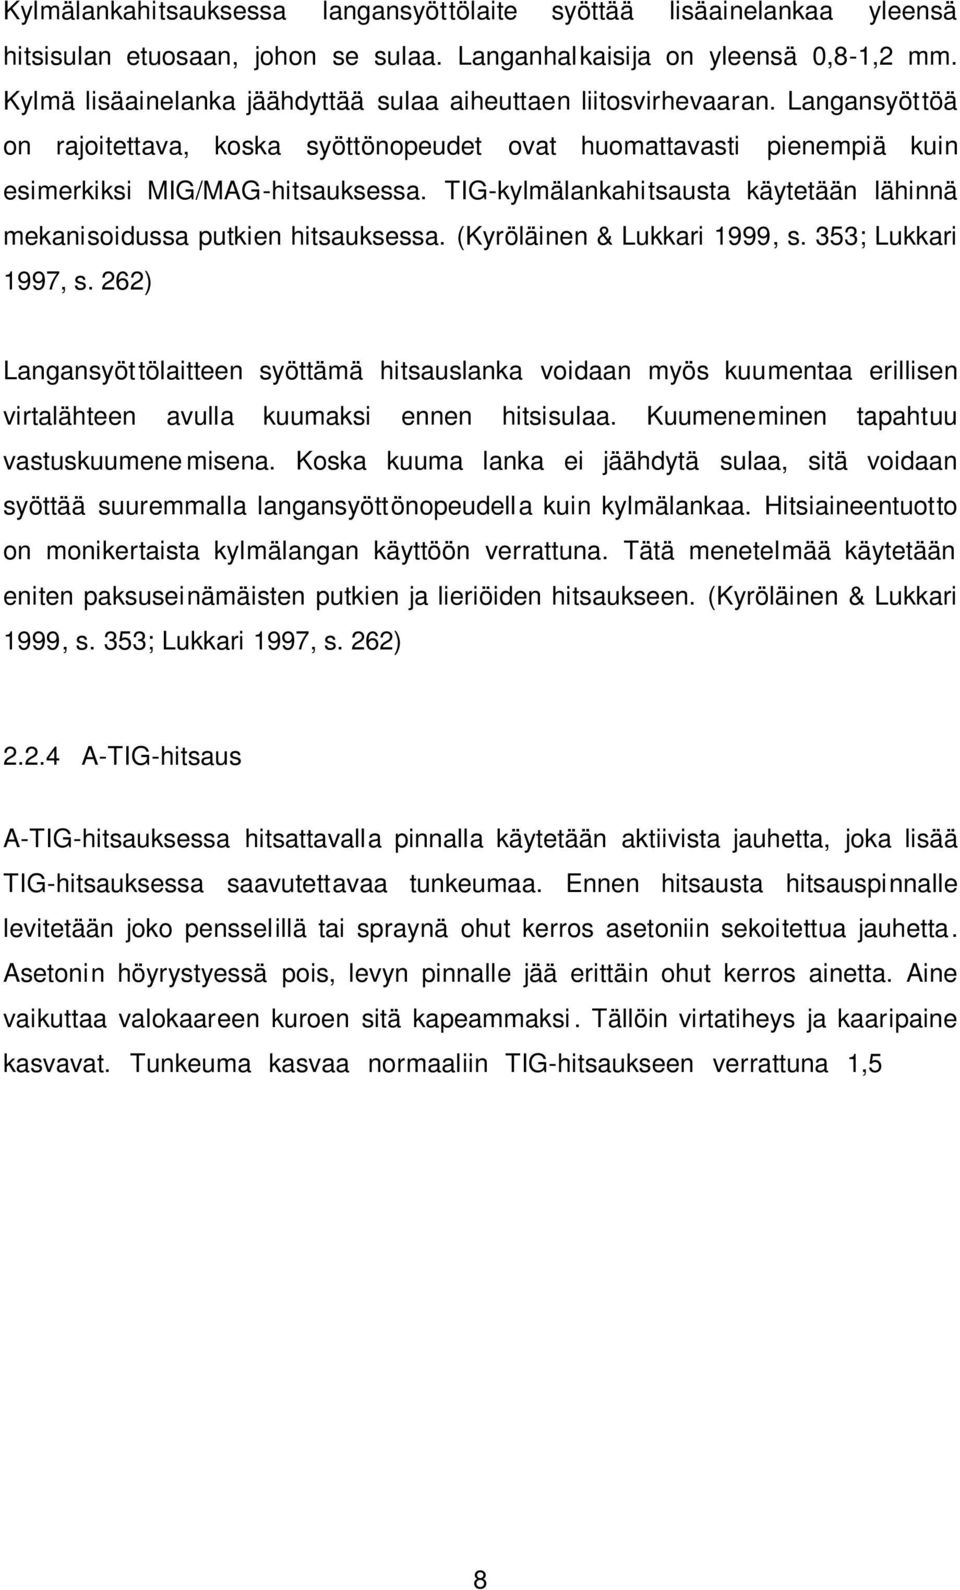 TIG-kylmälankahitsausta käytetään lähinnä mekanisoidussa putkien hitsauksessa. (Kyröläinen & Lukkari 1999, s. 353; Lukkari 1997, s.